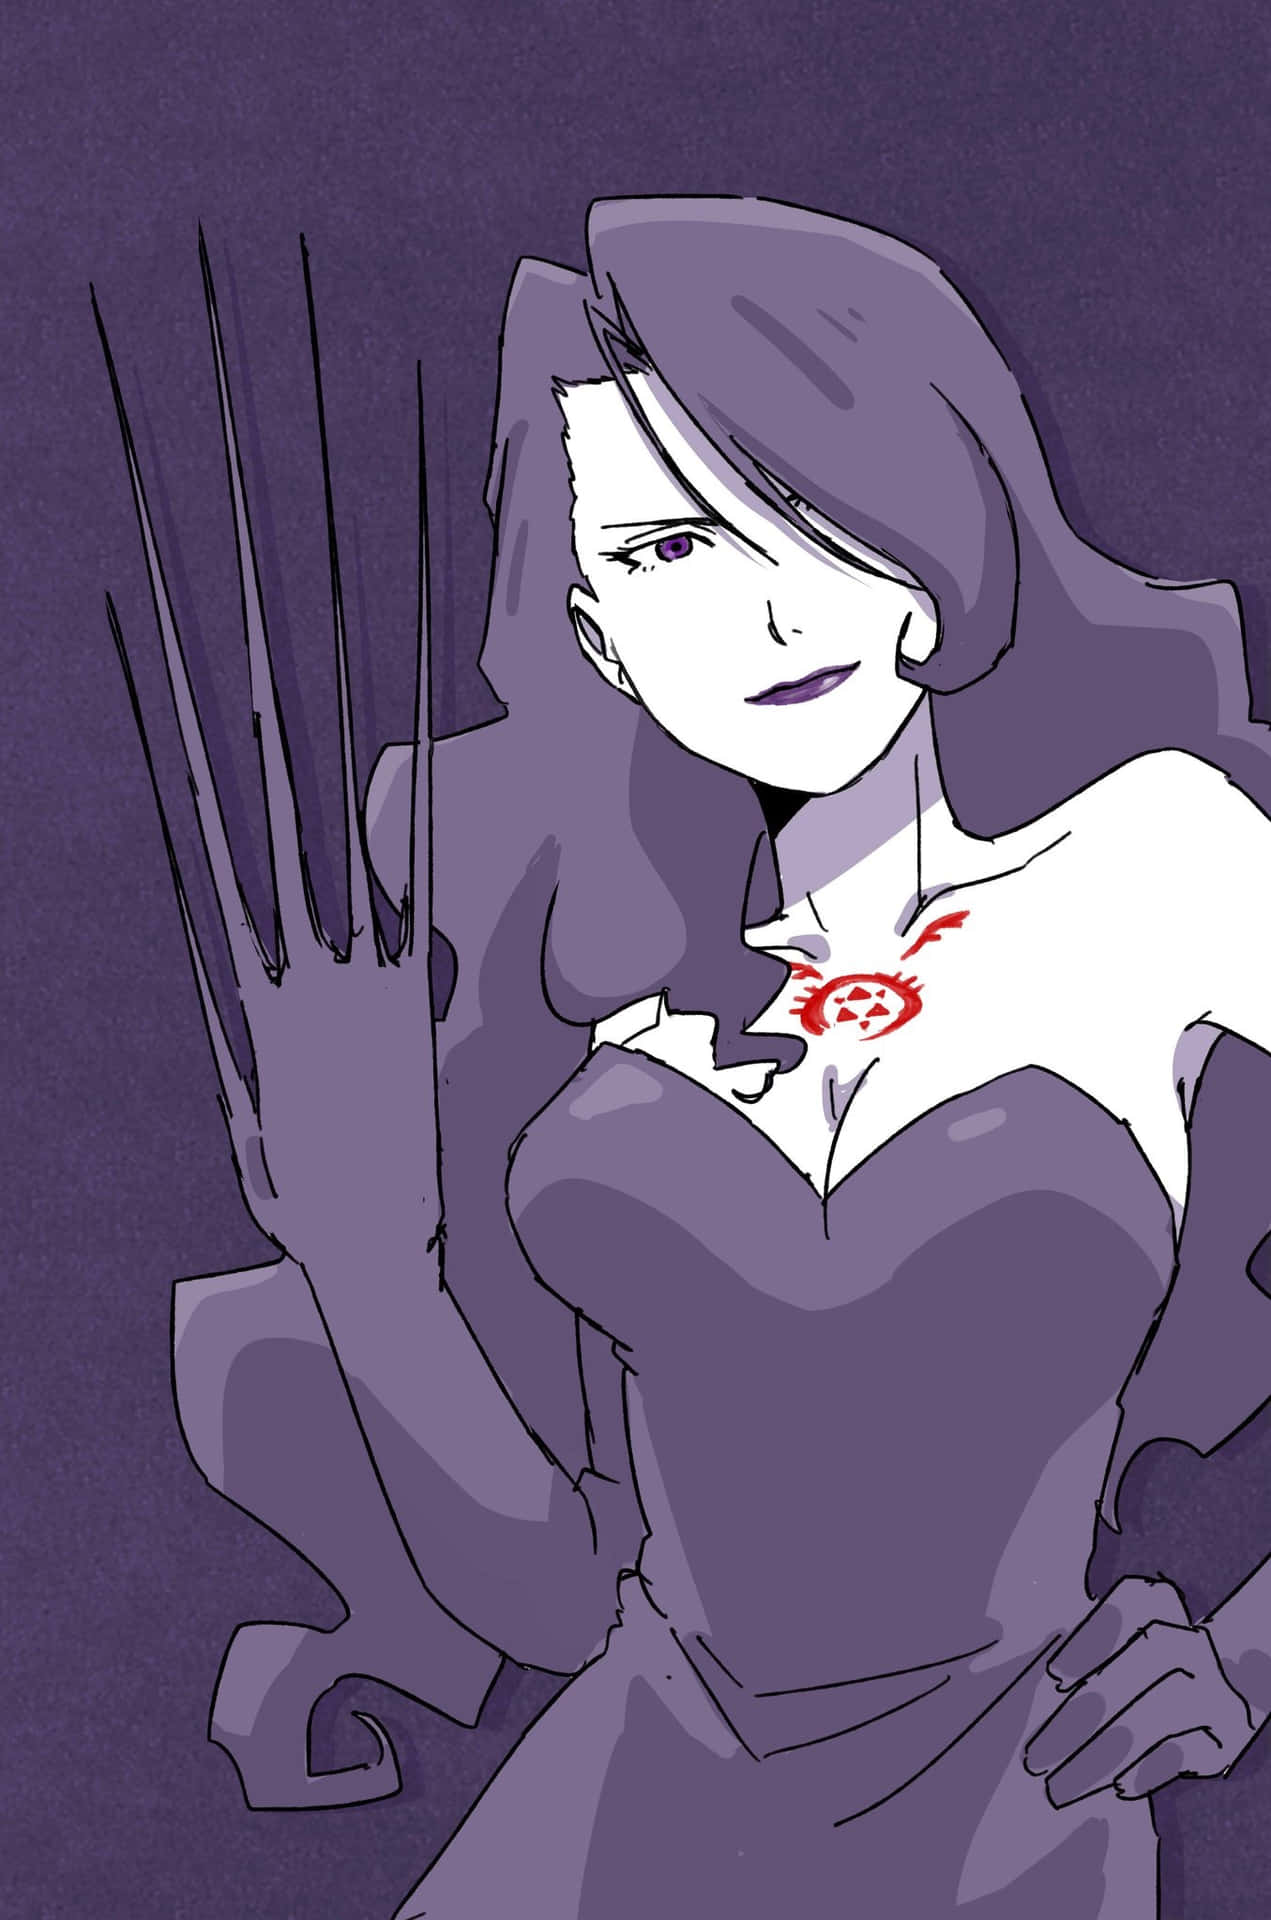 Fullmetal Alchemist's Lust character artwork Wallpaper